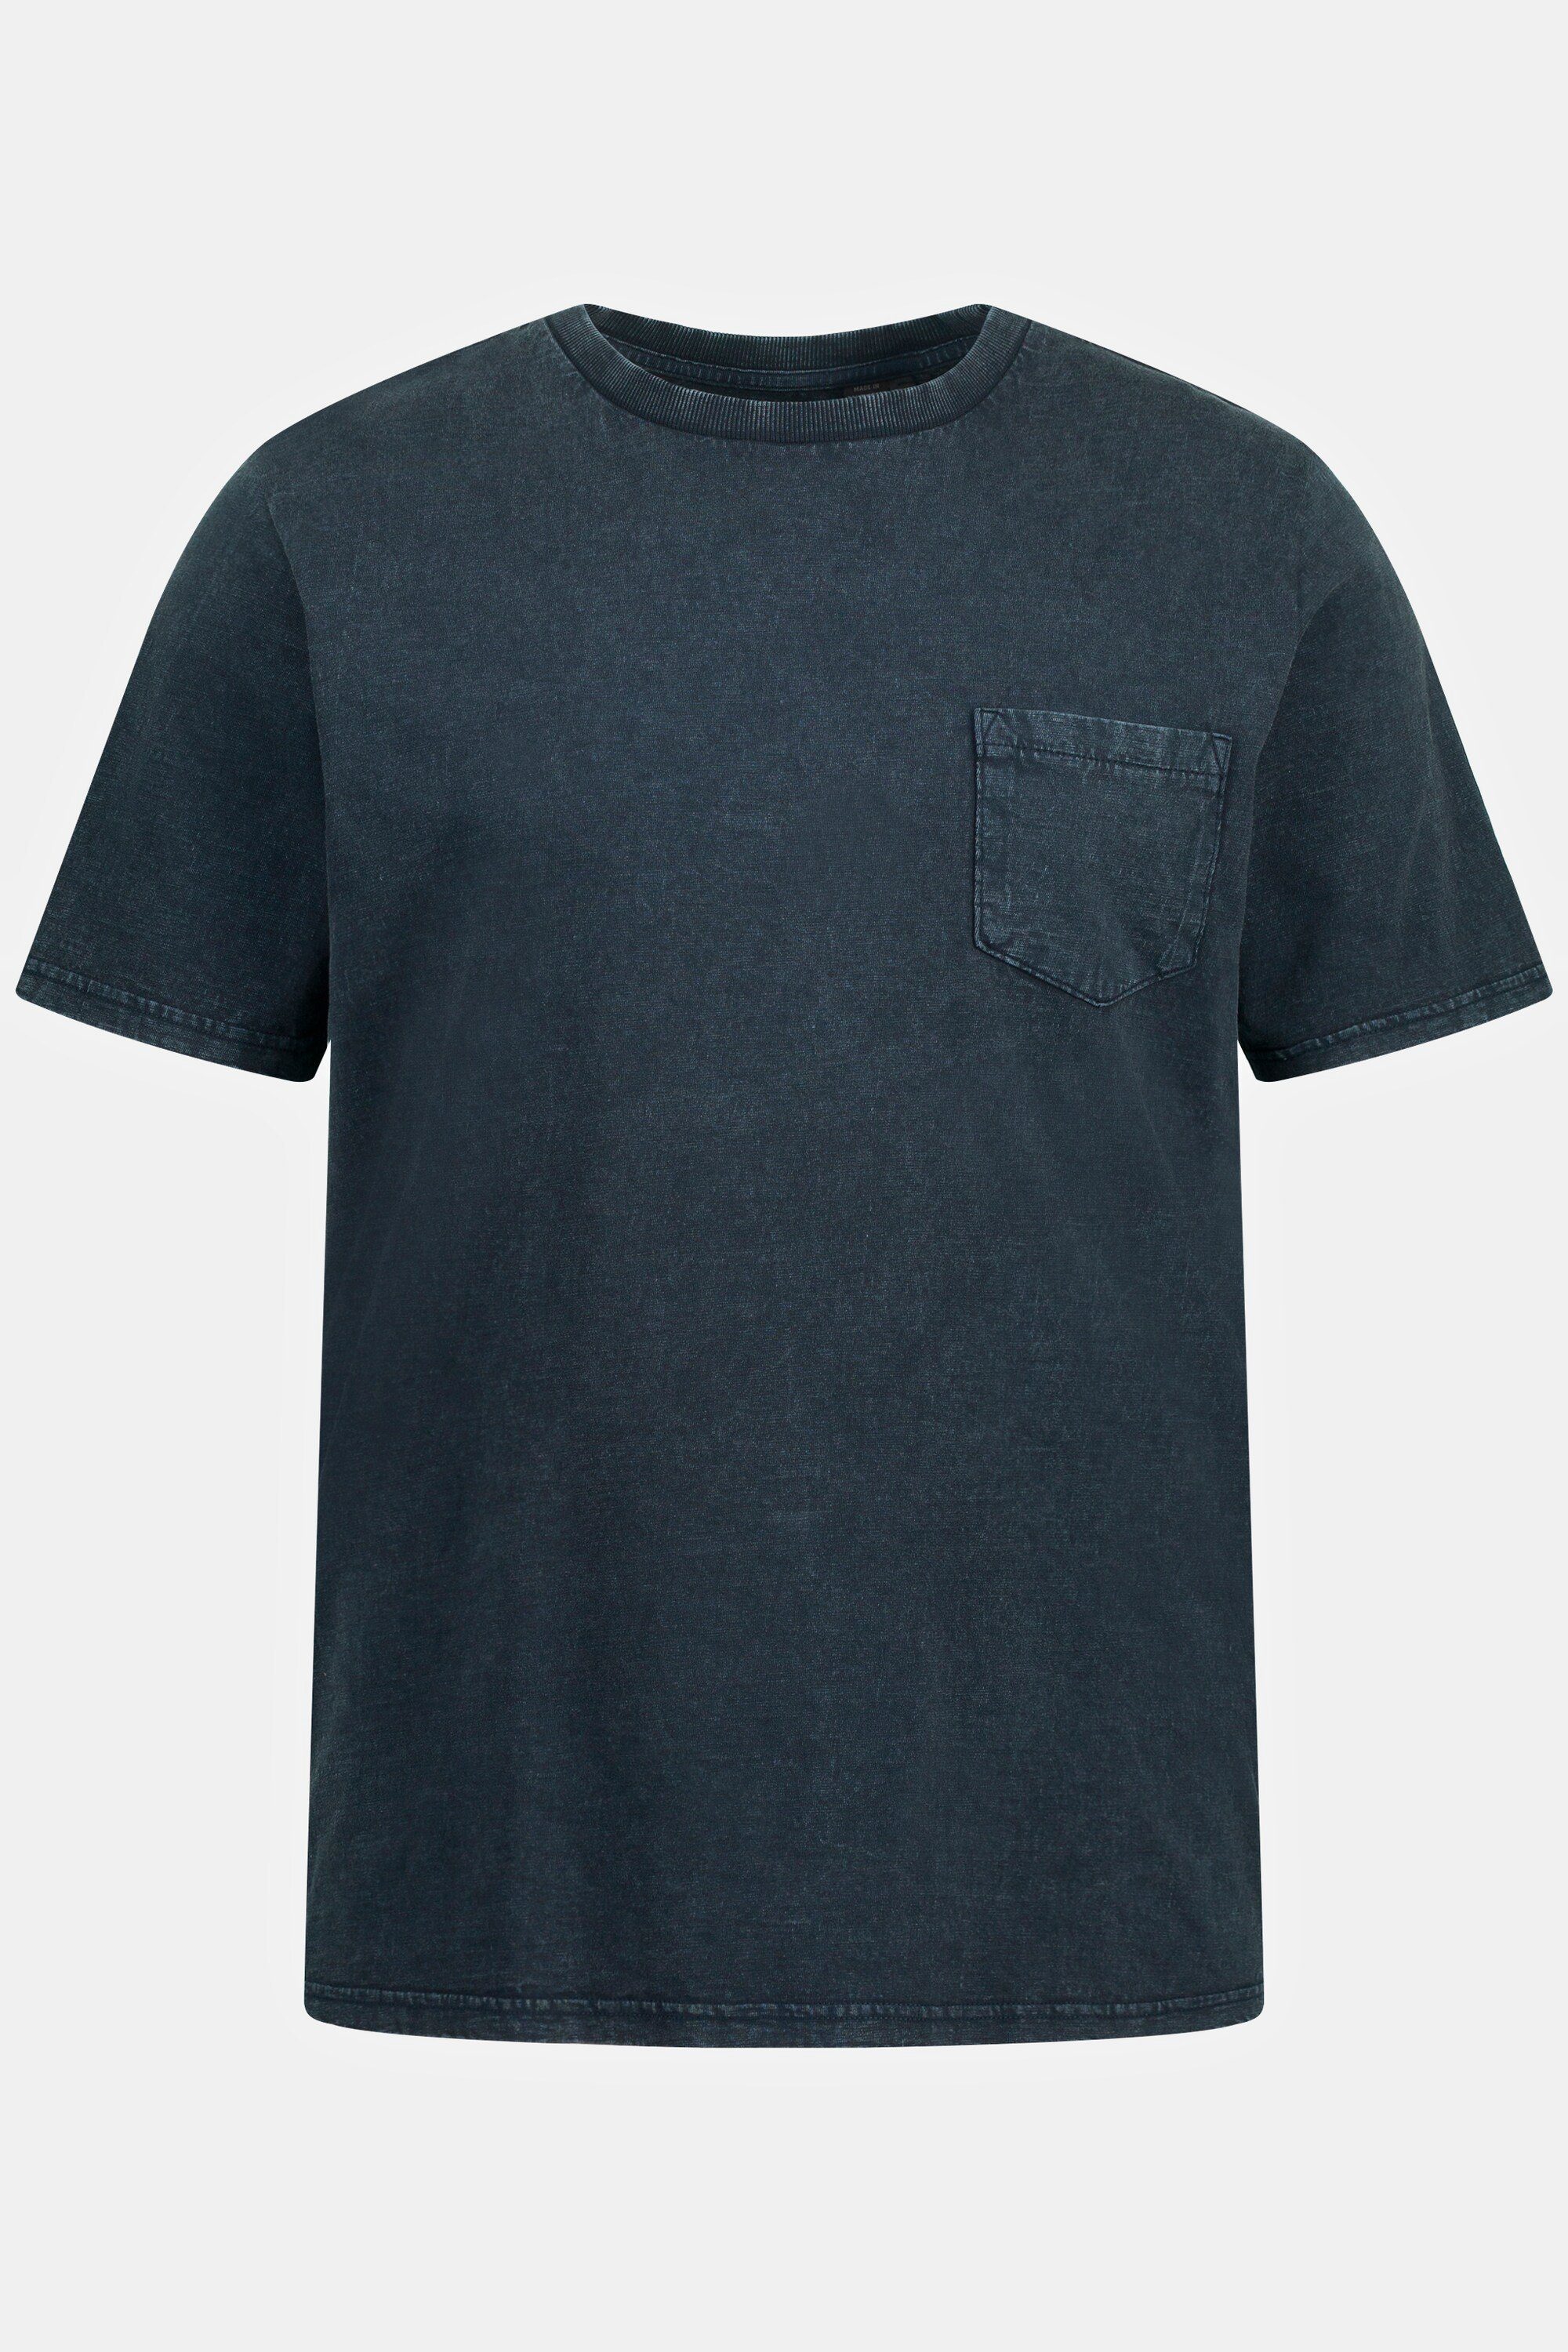 T-Shirt Brusttasche Halbarm JP1880 nachtblau Rundhals T-Shirt mattes